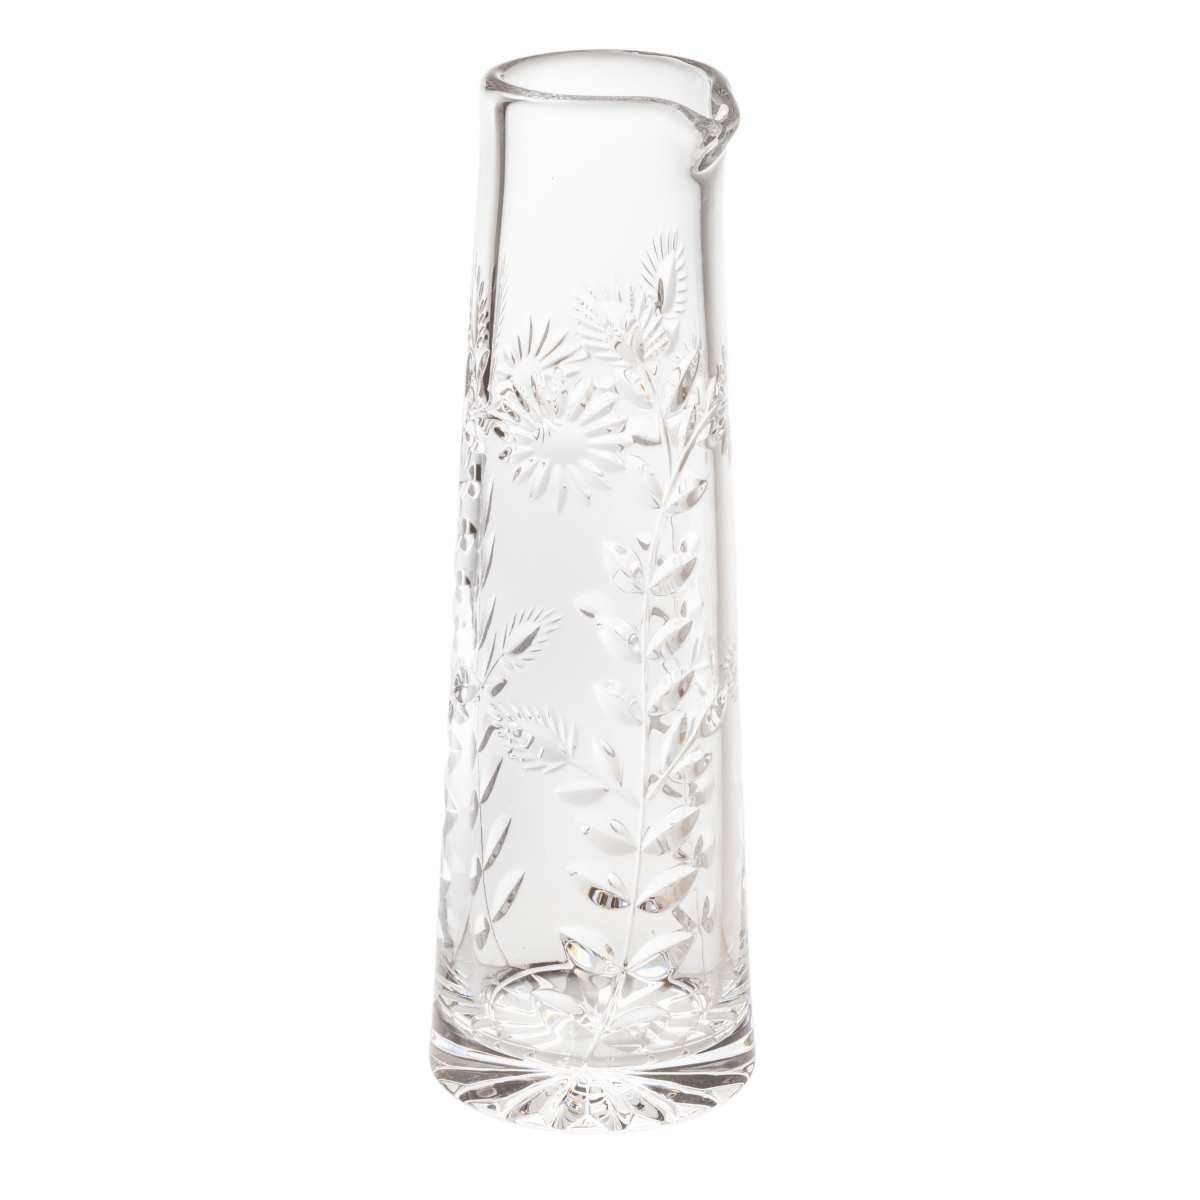 Ségur - Pichet - Cristallerie de Montbronn-Broc à eau